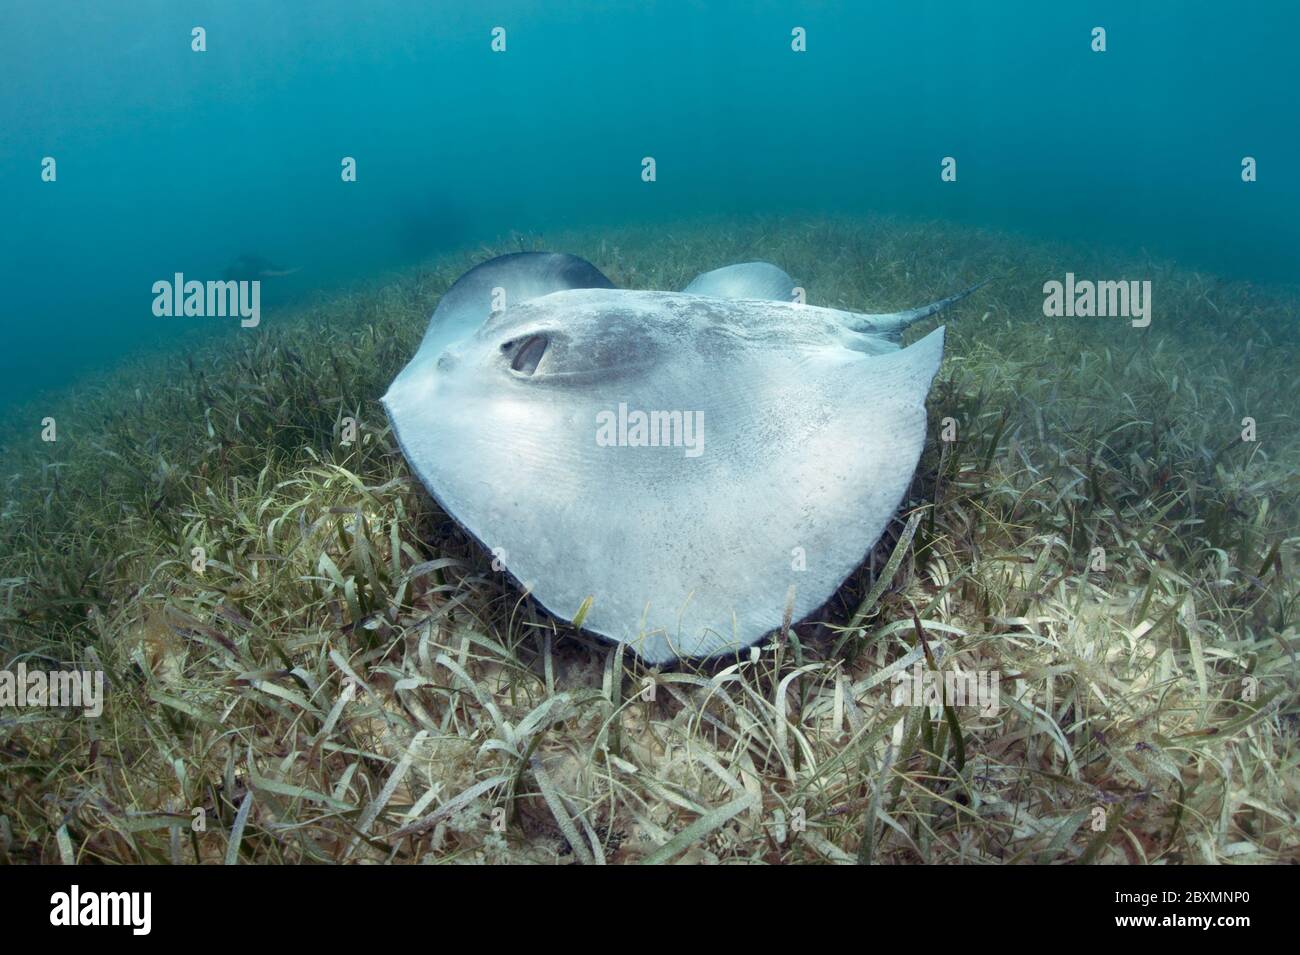 Le staingray de queue de baleine des Caraïbes (Styracula schmardae) nage au-dessus de l'herbe de mer à la barrière de corail du Belize. Banque D'Images